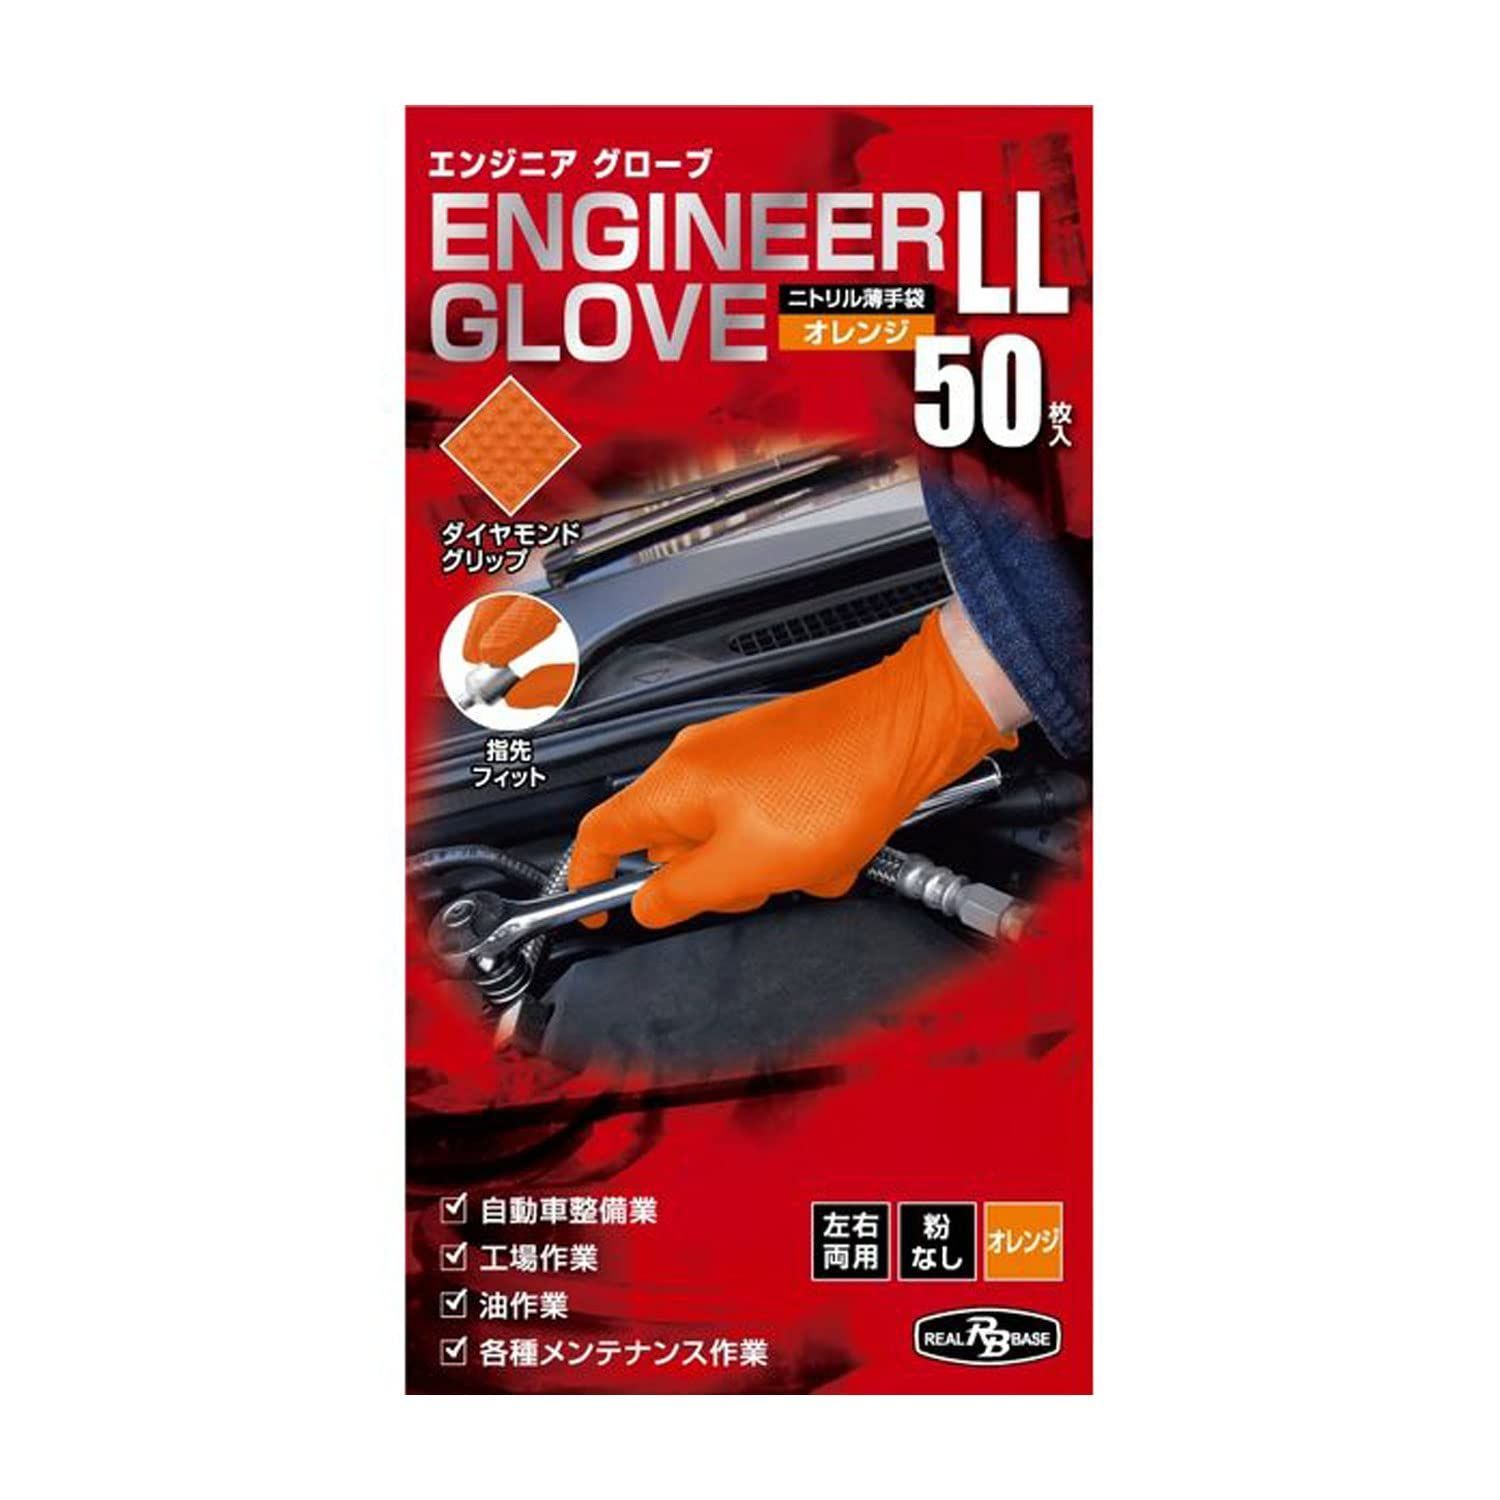 ﾐﾀﾆｺｰﾎﾟﾚｰｼｮﾝ] 【業務用】エンジニア グローブ ニトリル薄手袋 粉なし 左右両用 オレンジ LLサイズ 50枚入 - メルカリ